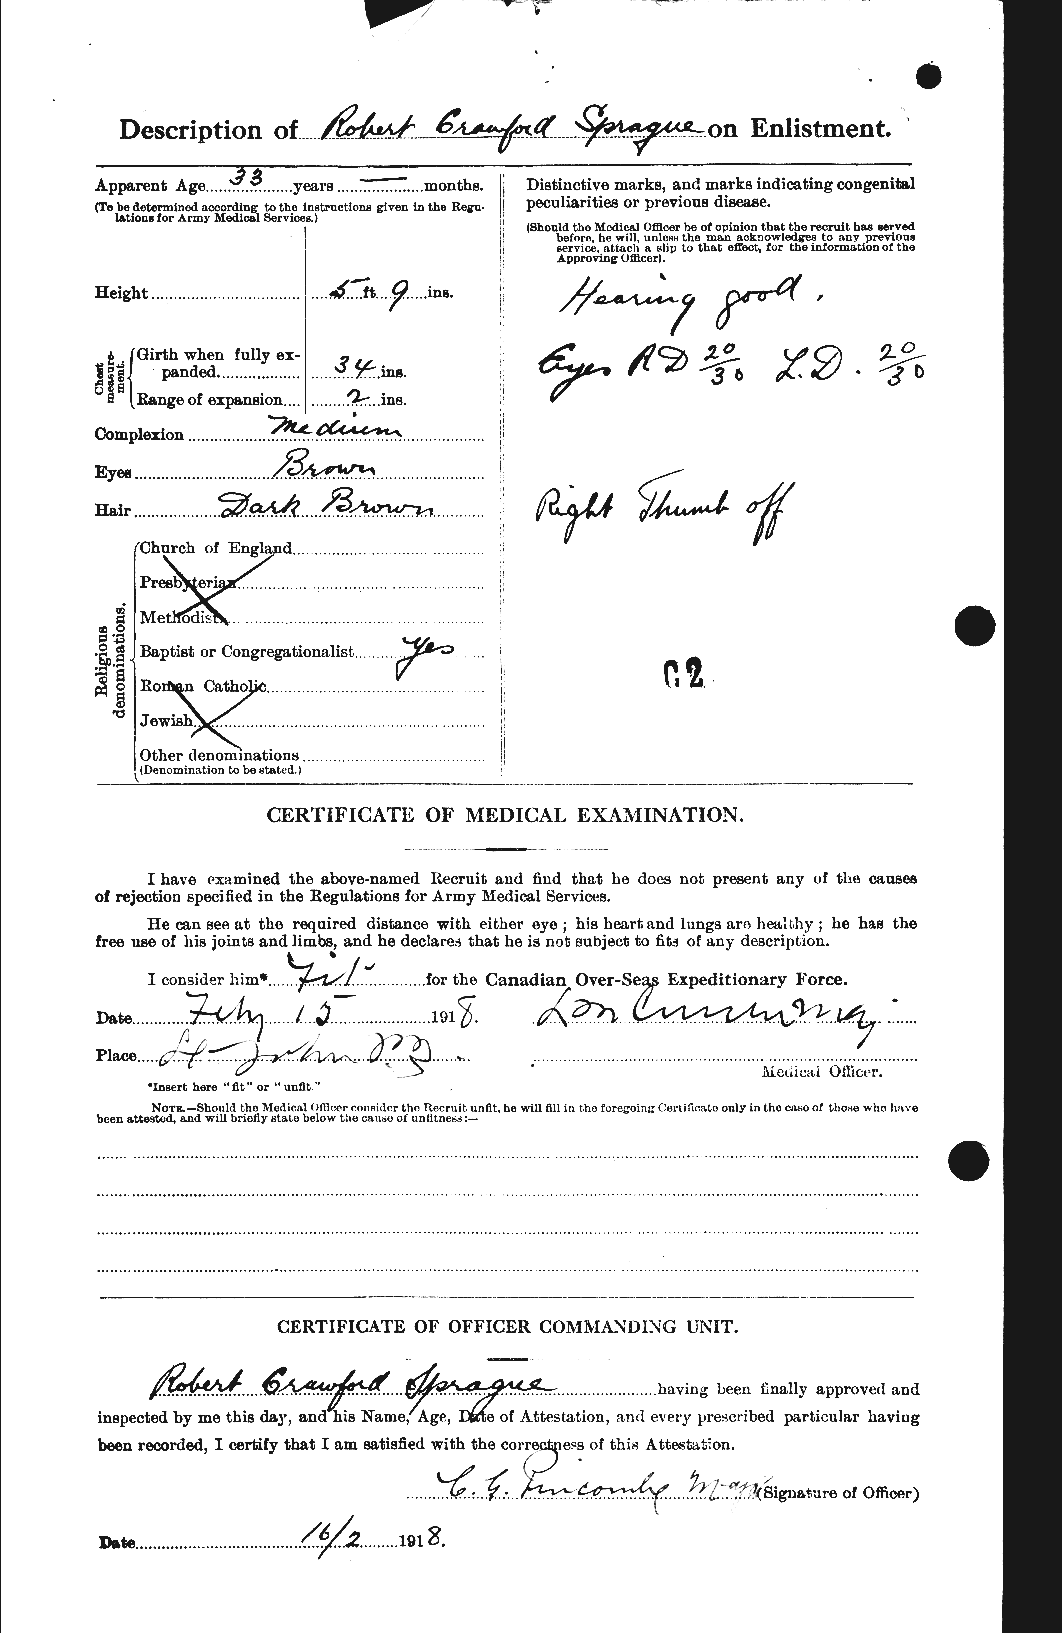 Dossiers du Personnel de la Première Guerre mondiale - CEC 112528b